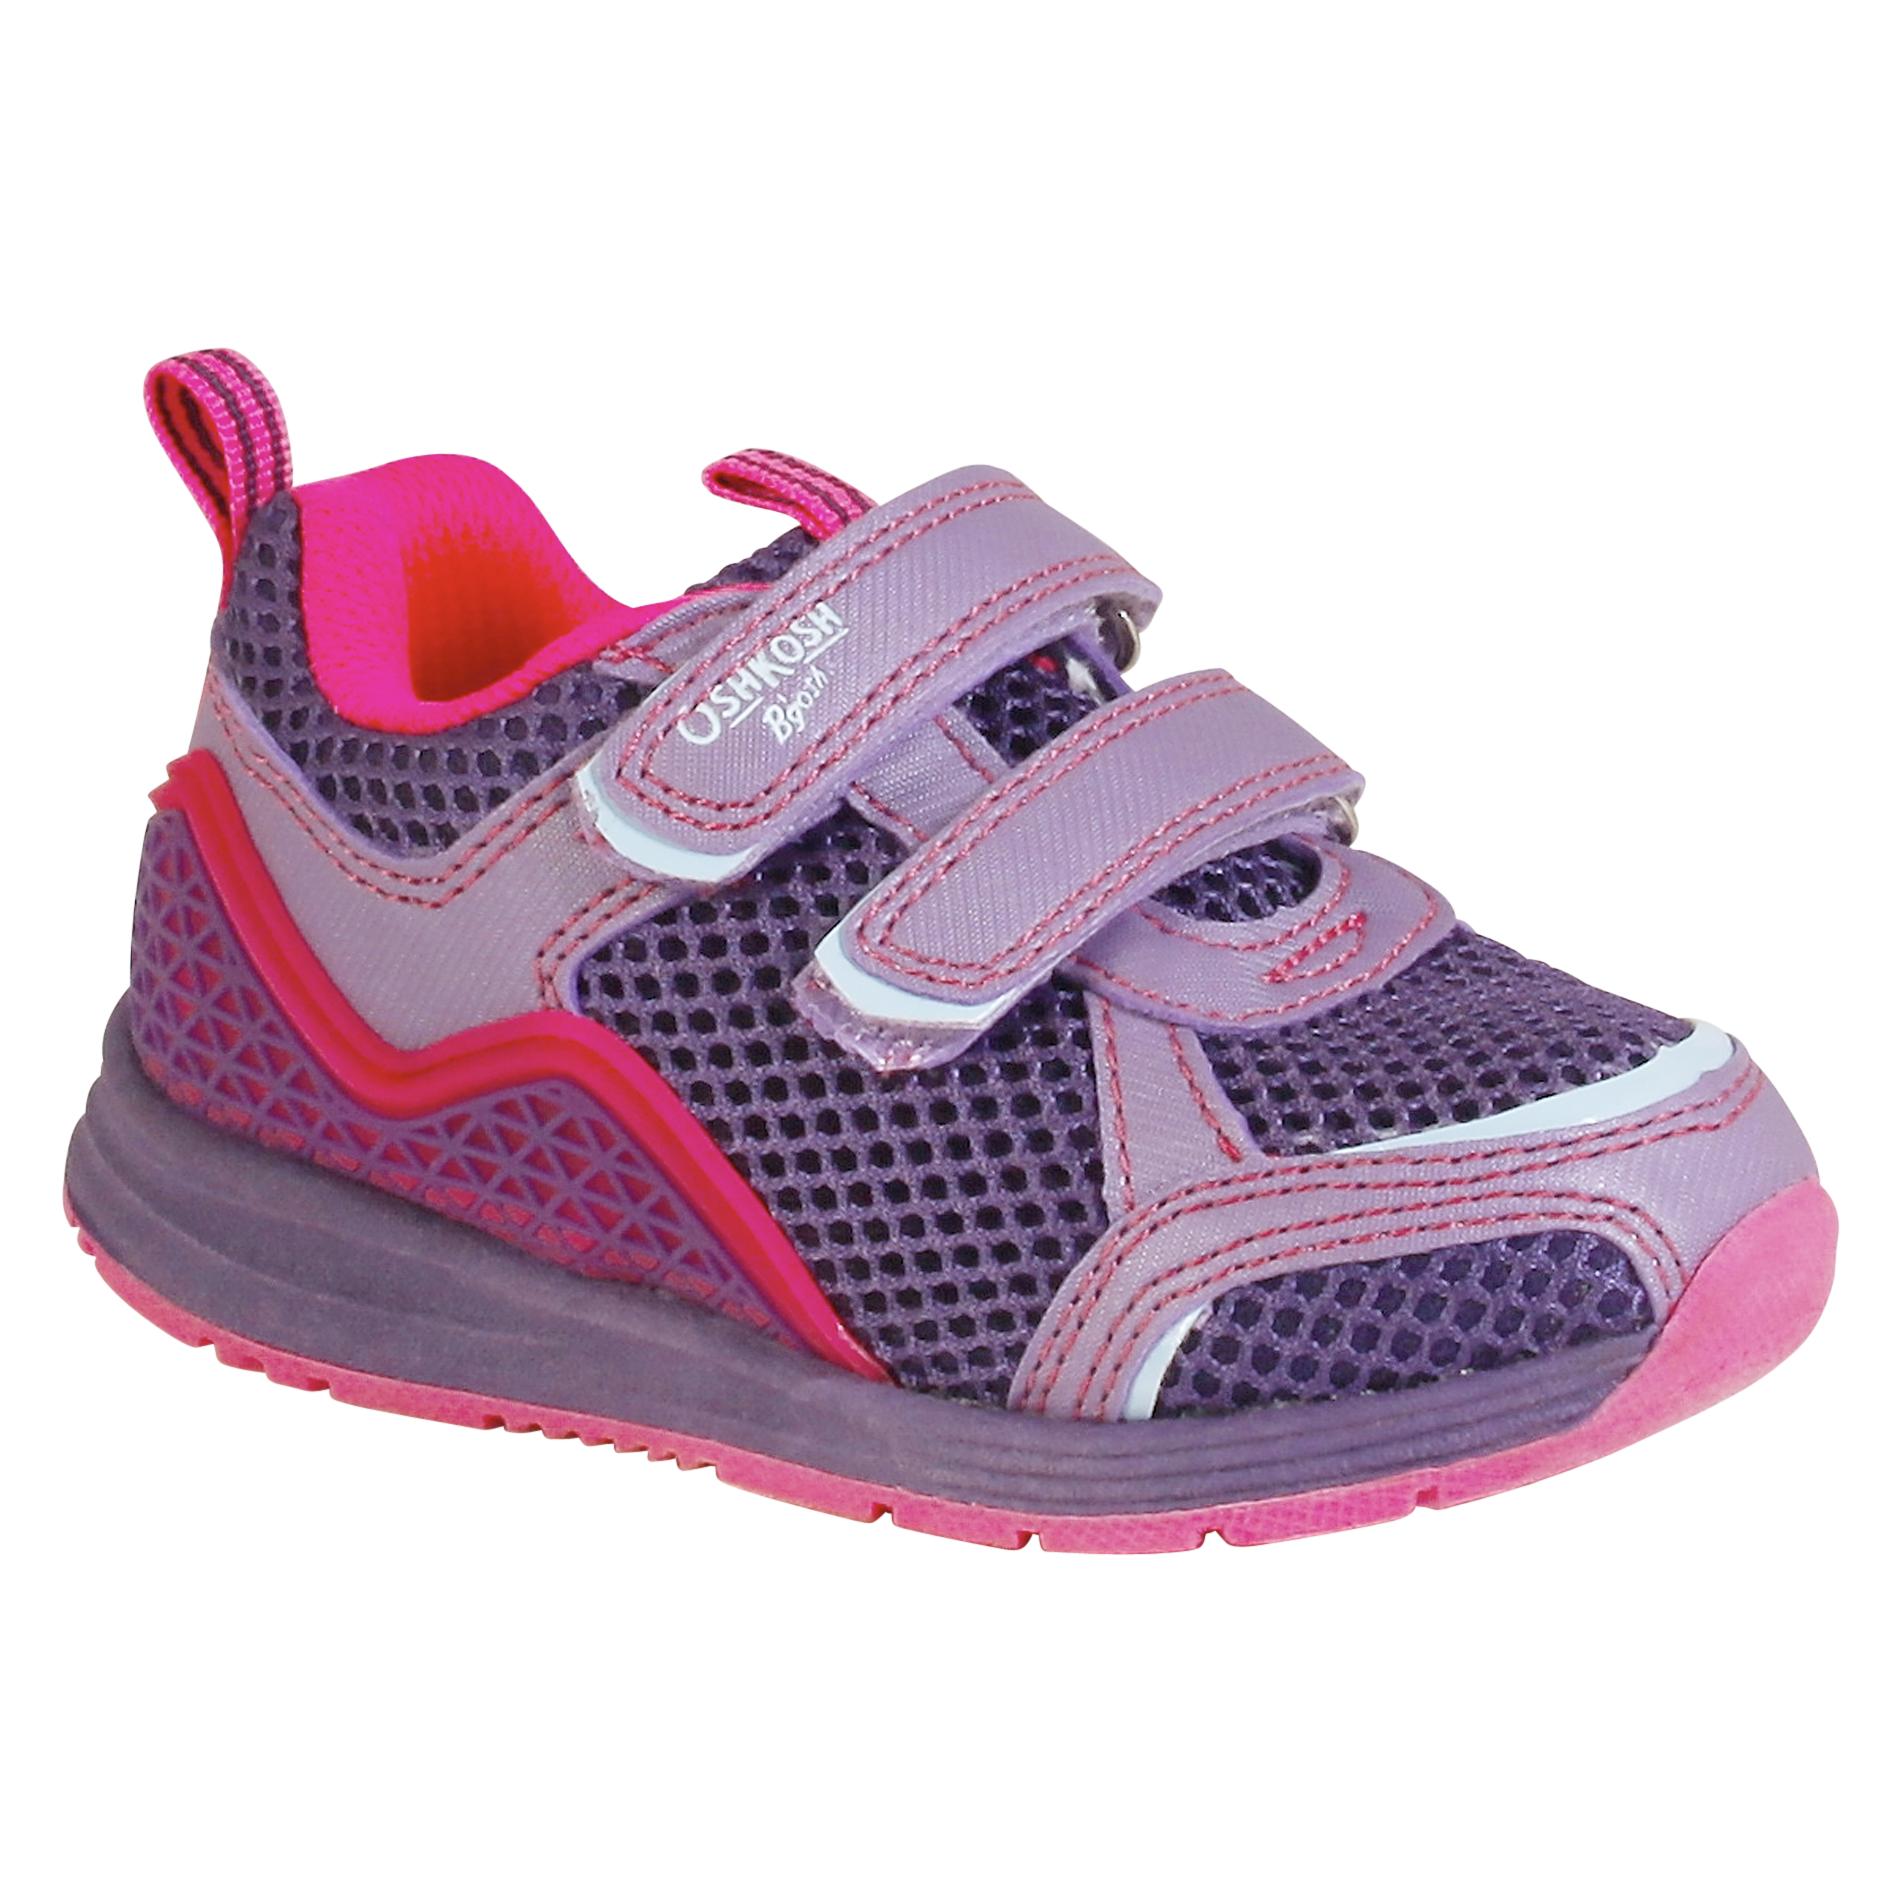 OshKosh Toddler Girl's Inferno Athletic Shoe - Purple